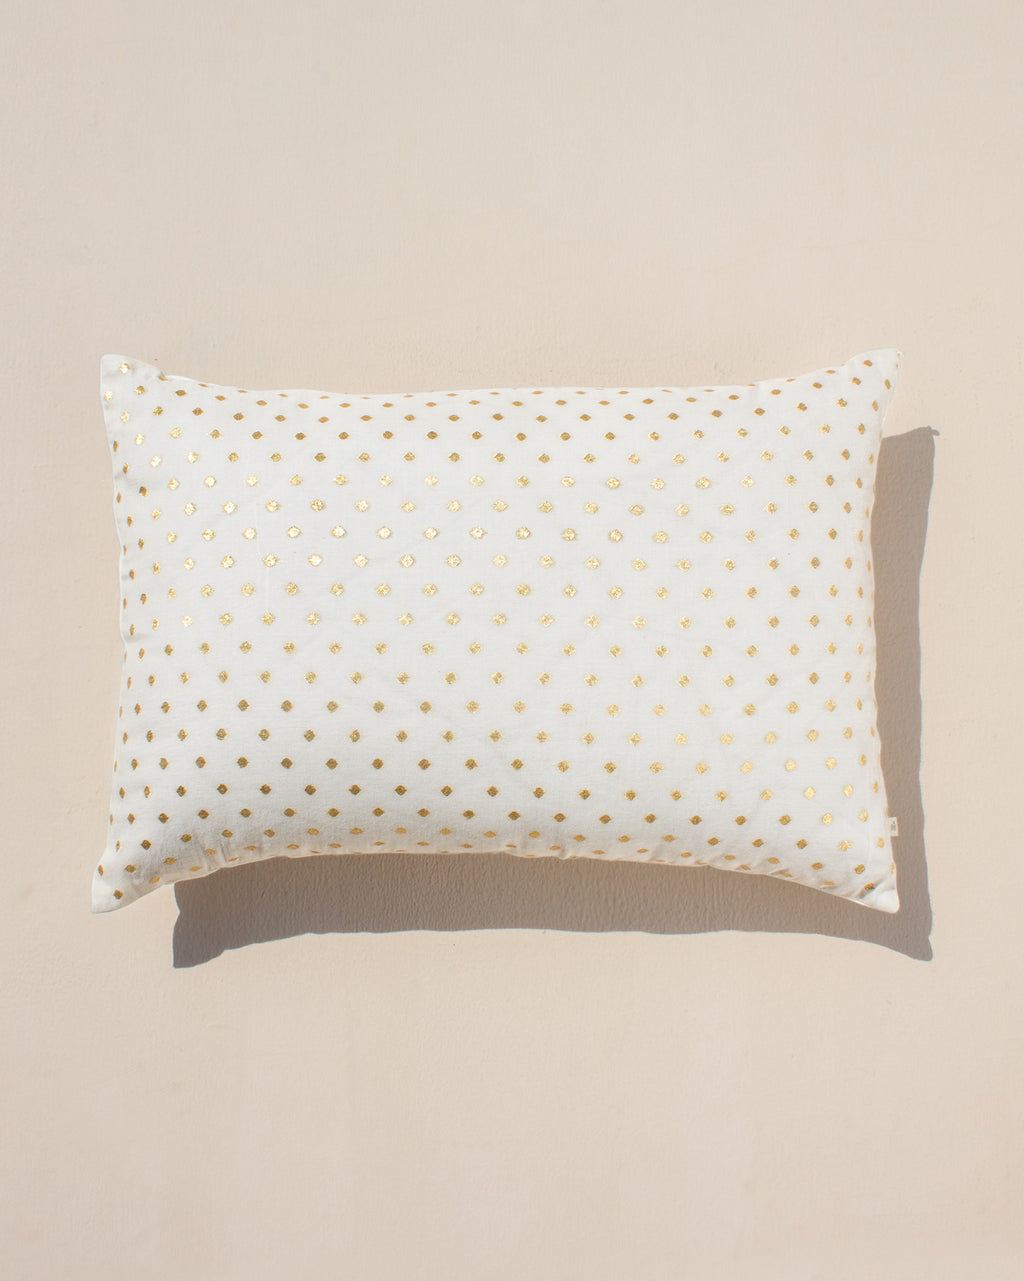 Pillow Filler 36 x 66 cm